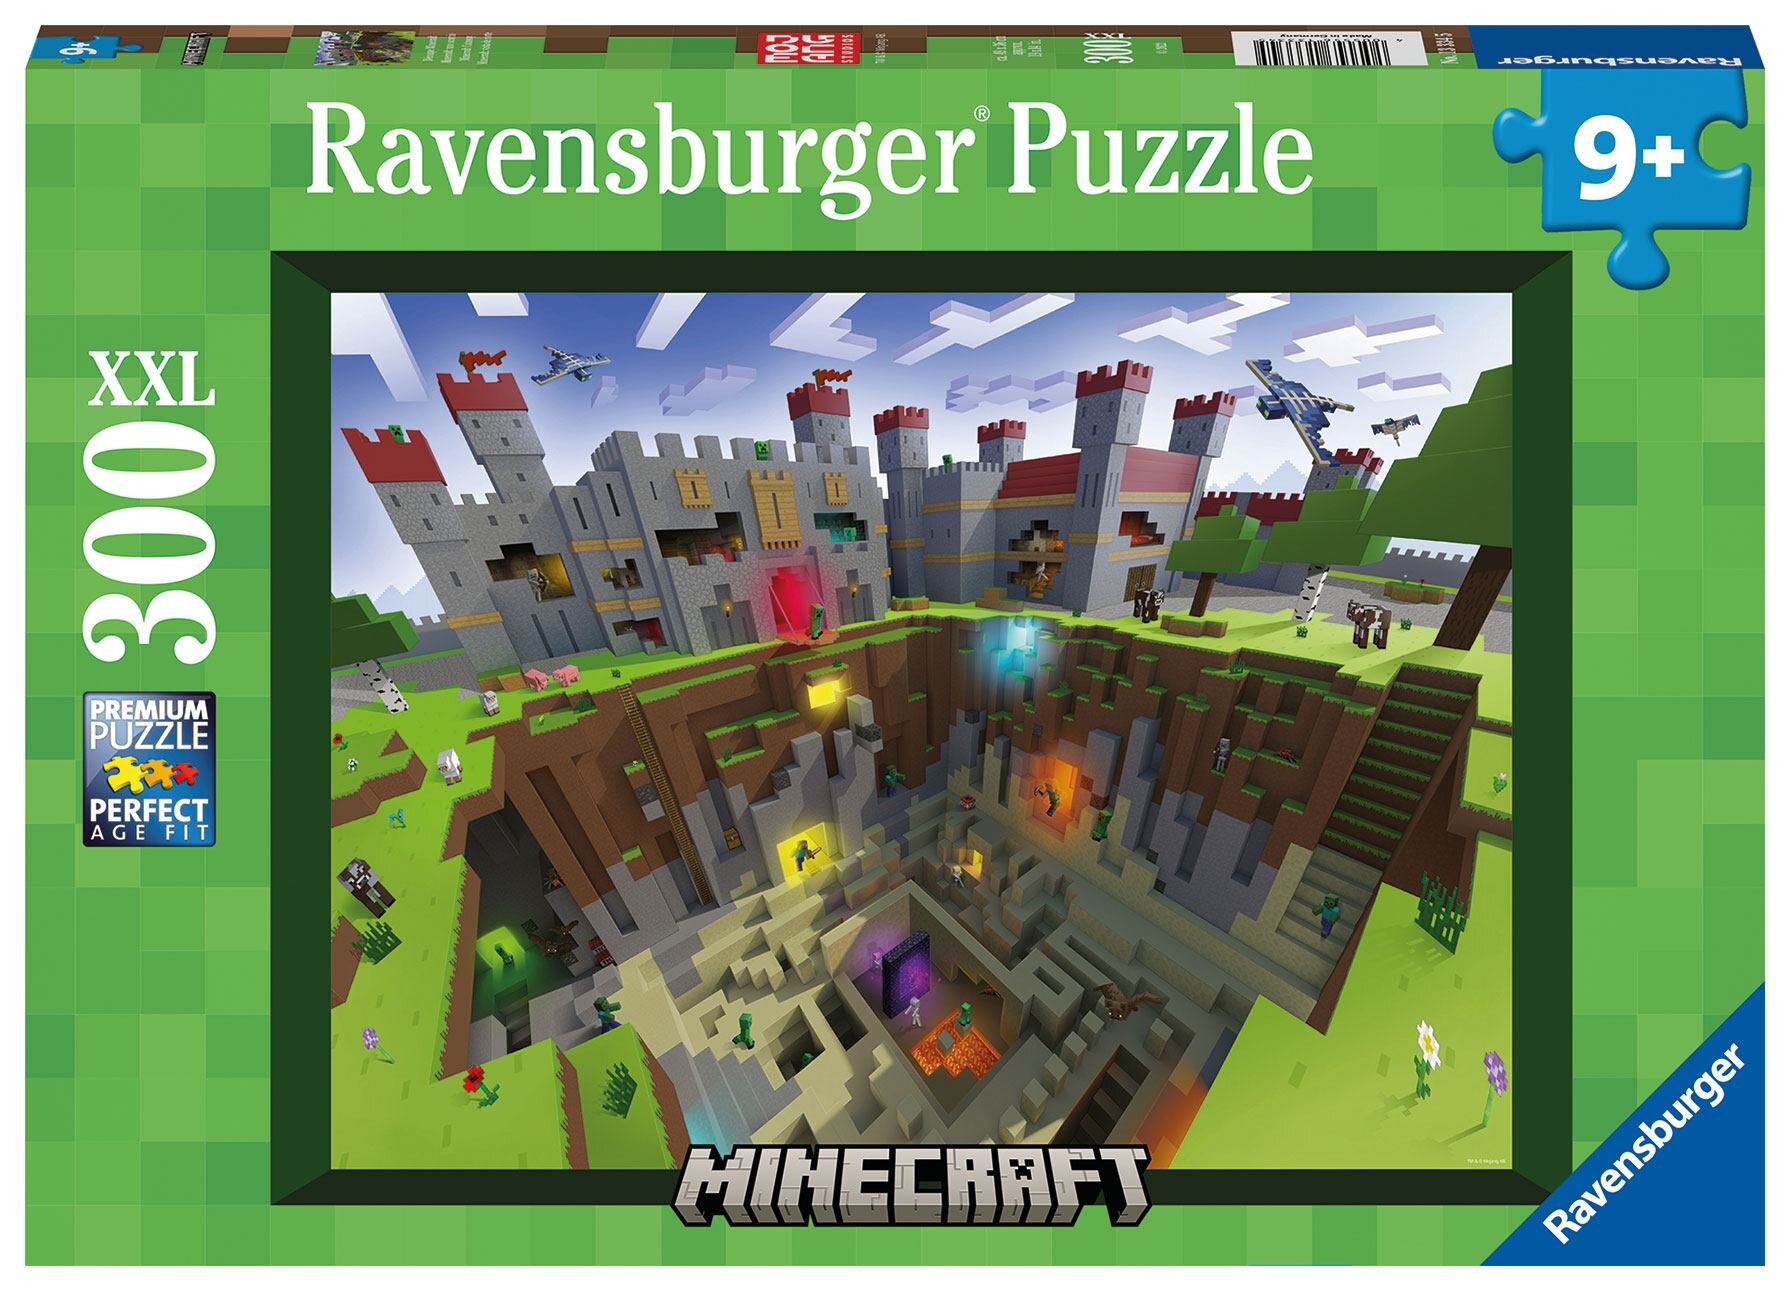 Ravensburger Puzzel - Minecraft Cutaway 300 stukjes XXL